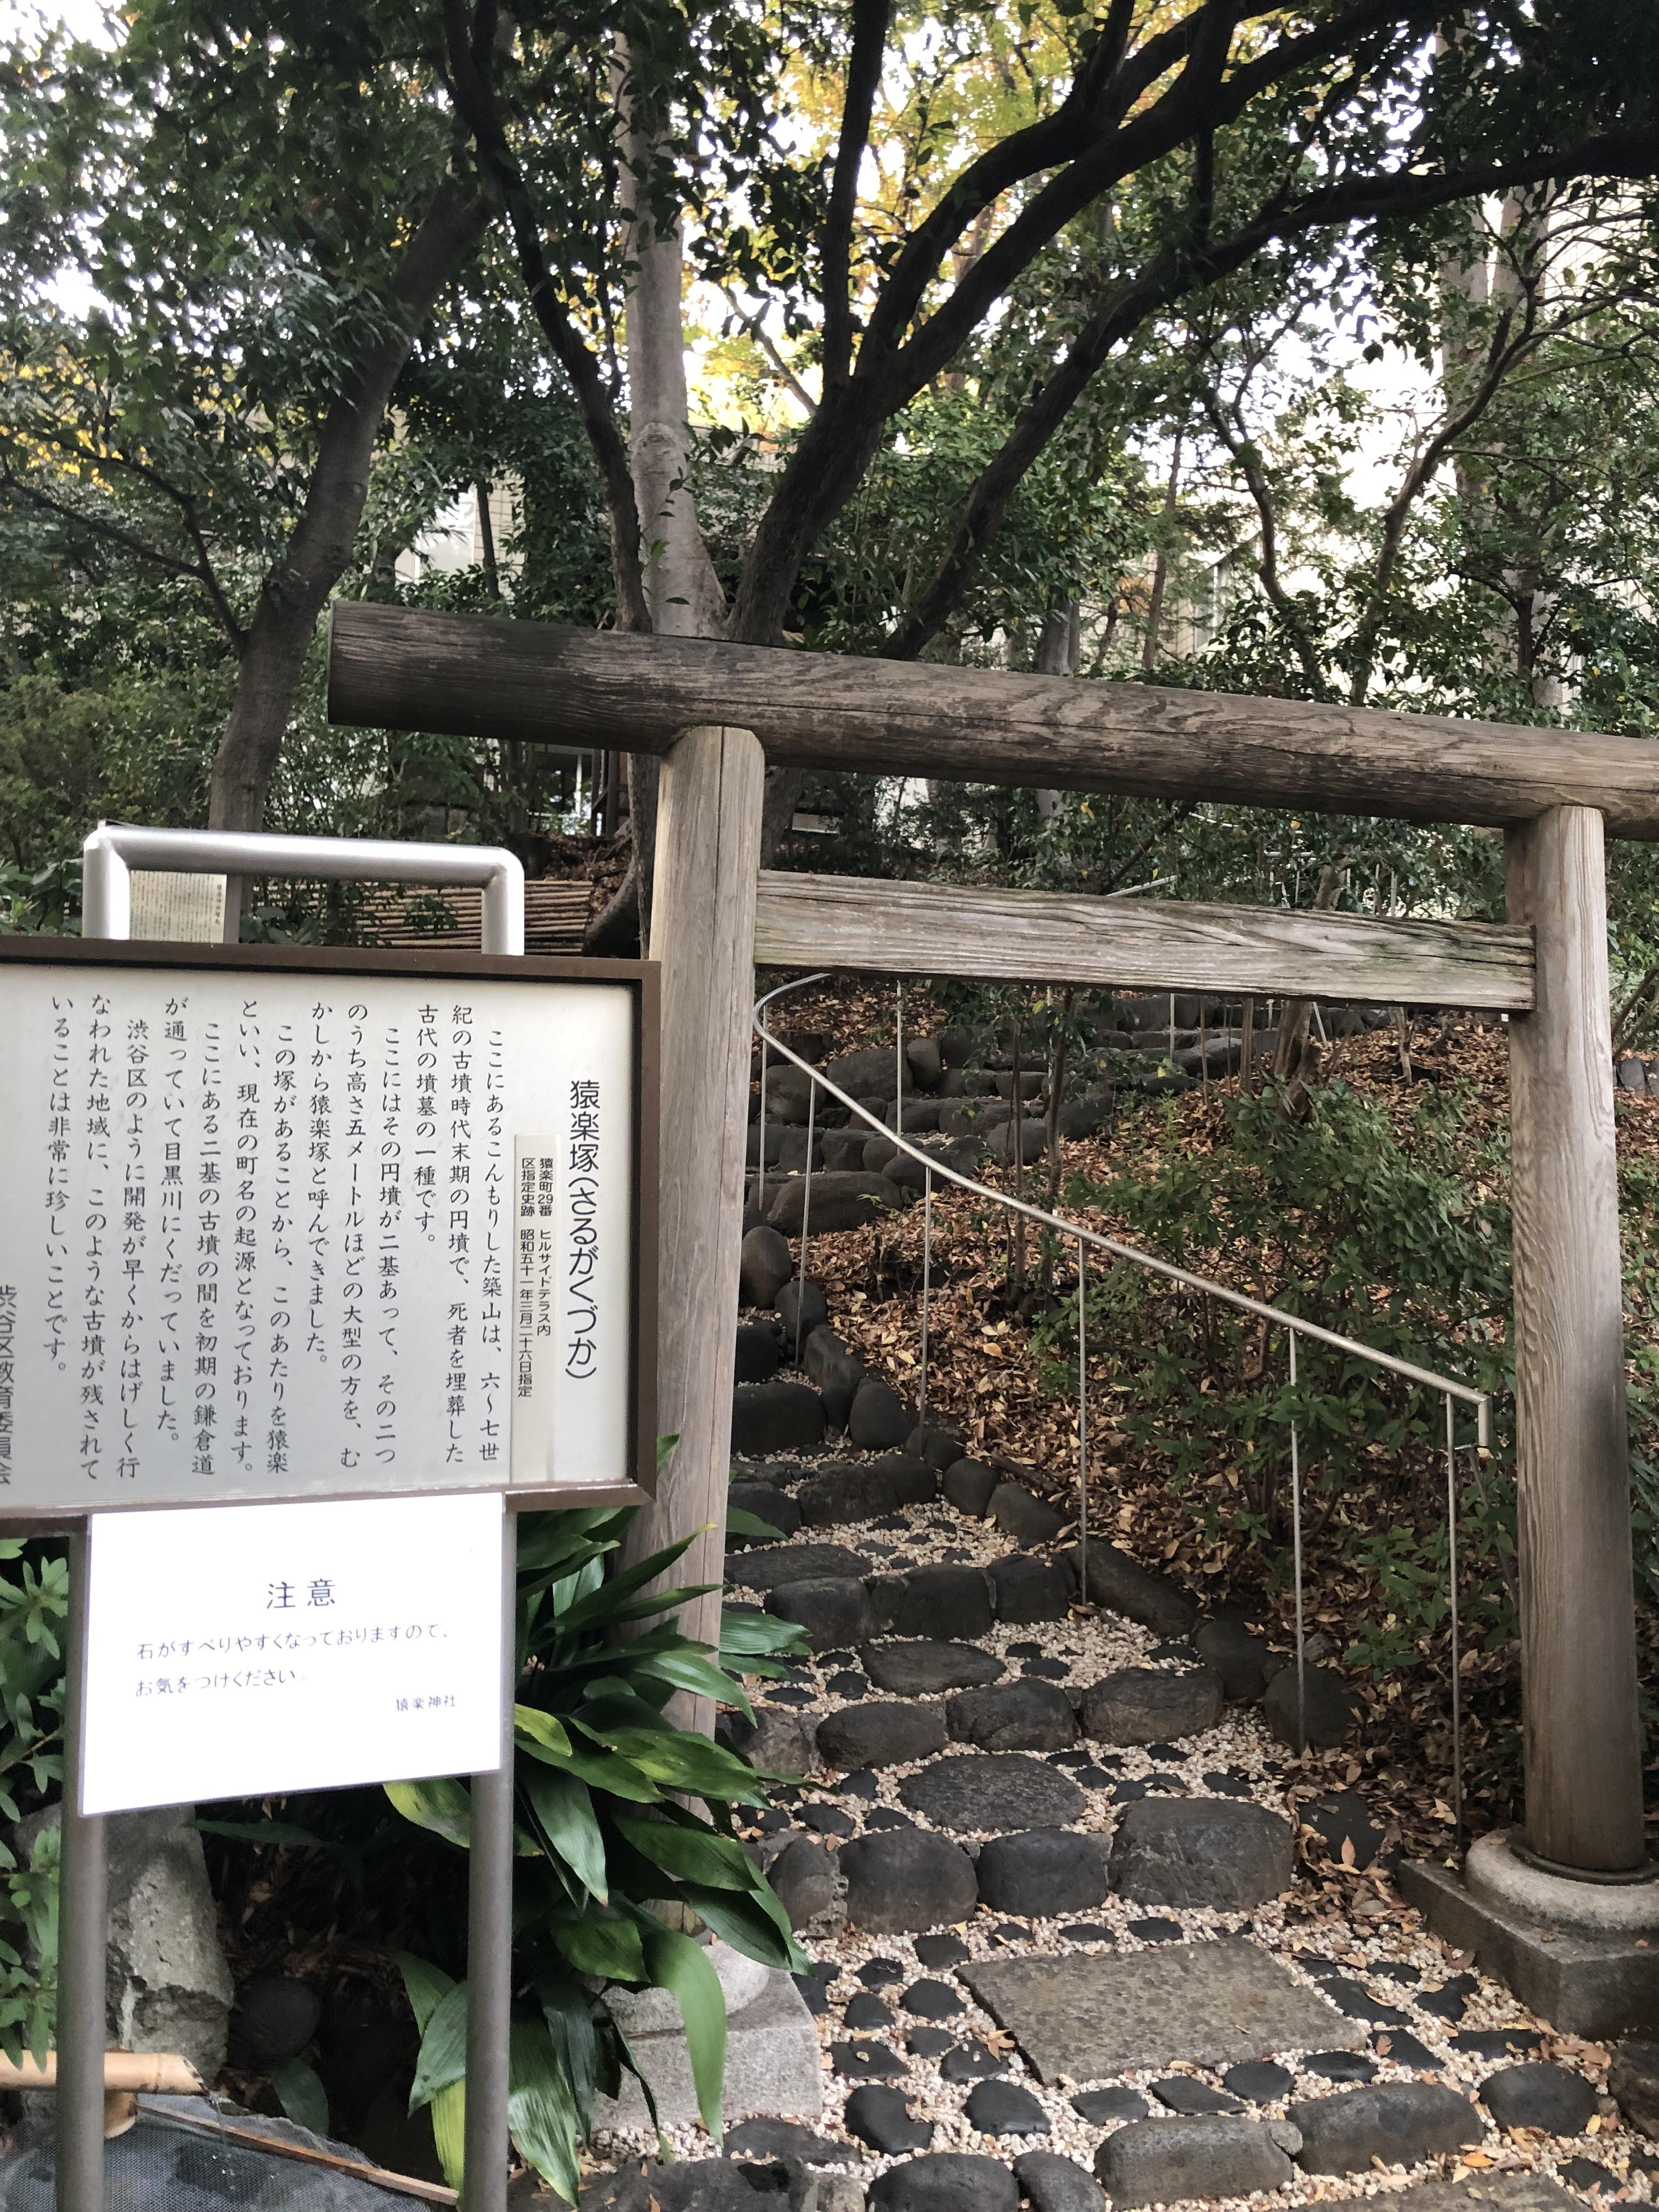 猿楽神社 東京都代官山駅 の投稿 1回目 3日前ほどに訪れた猿楽神社様 たまたま近くを通り ホトカミ